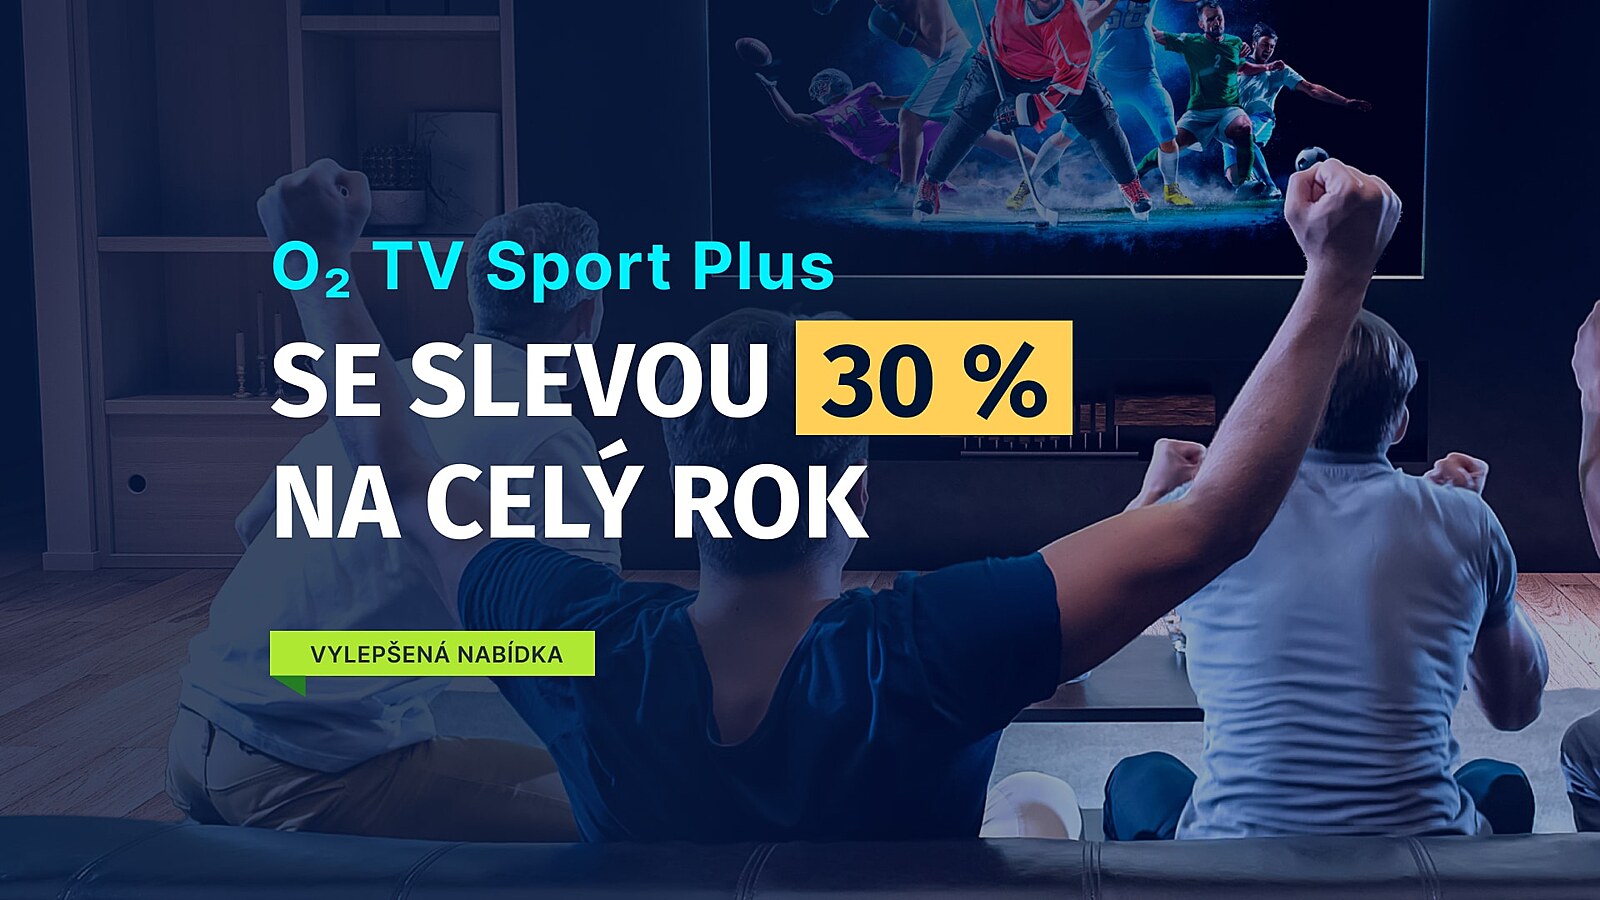 Získejte O2 TV Sport Plus s exkluzivní 30% slevou na celý rok. Ušetřete  stovky korun! - iDNES.cz